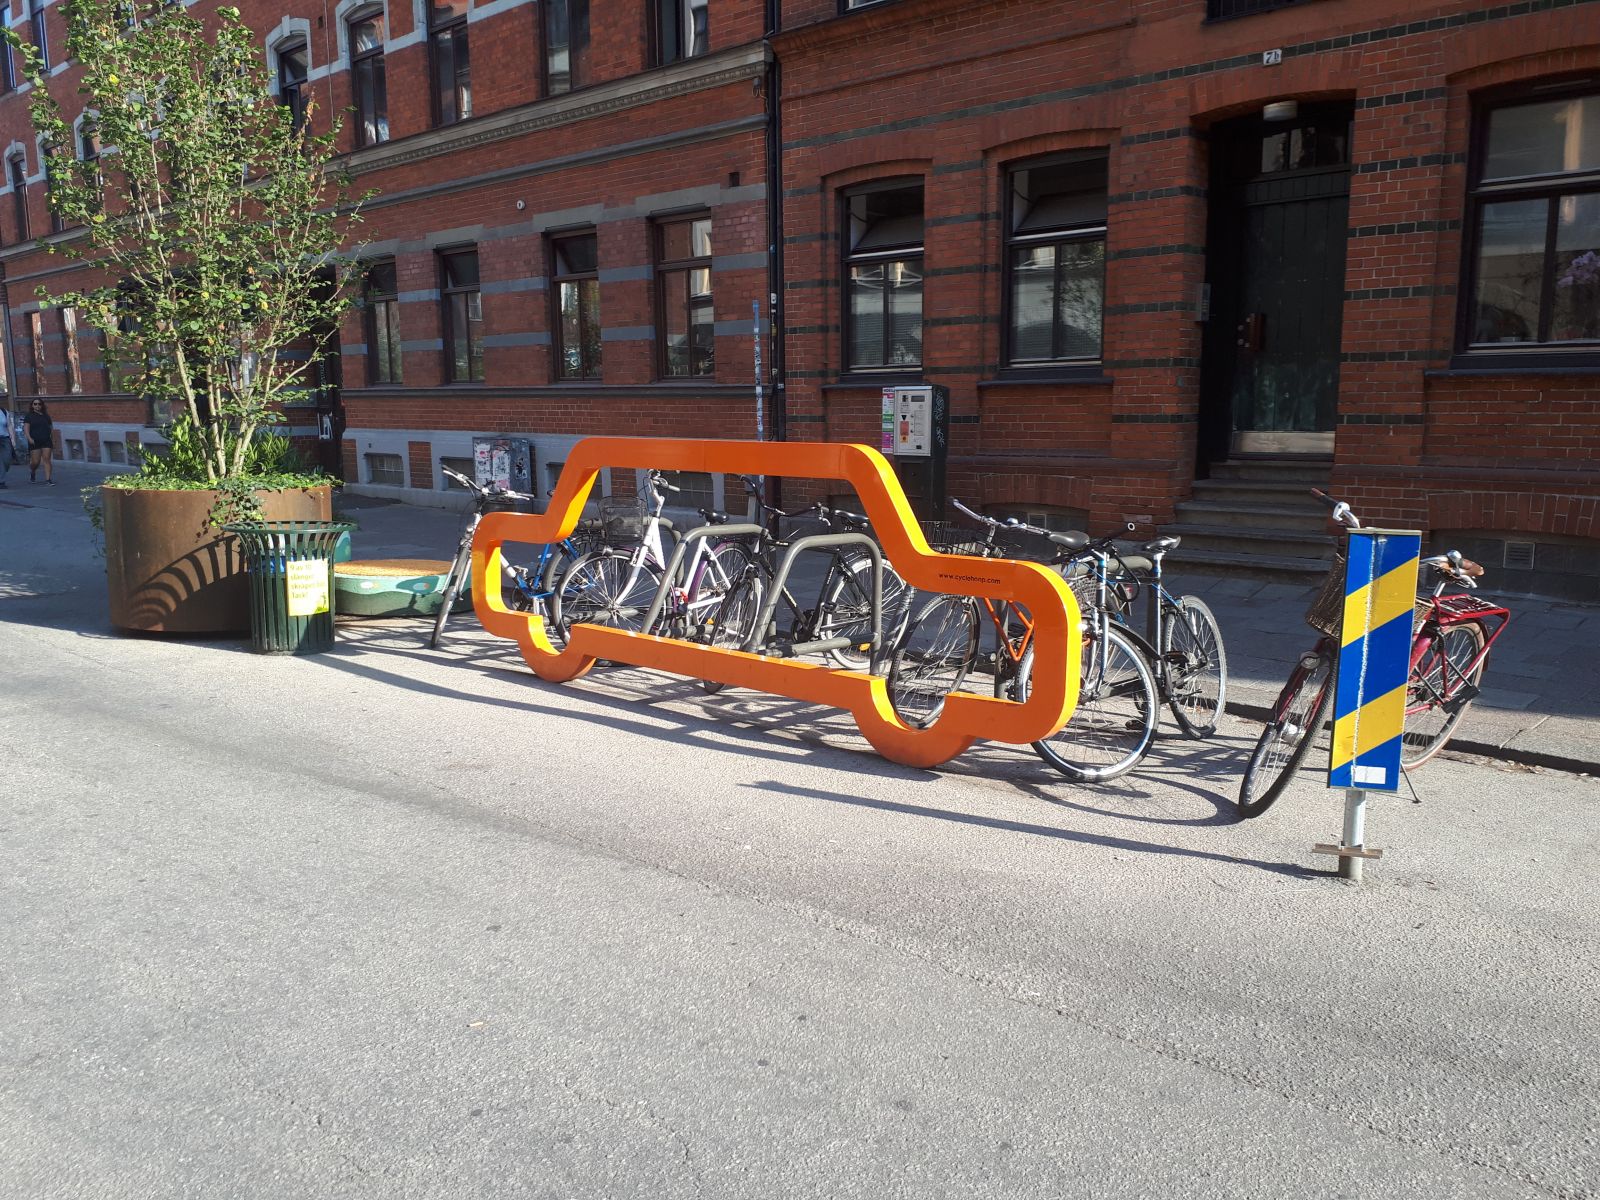 Mutatjuk ezt az út menti bicikliparkoló, ami utcai bútorzatként is megállja a helyét.
